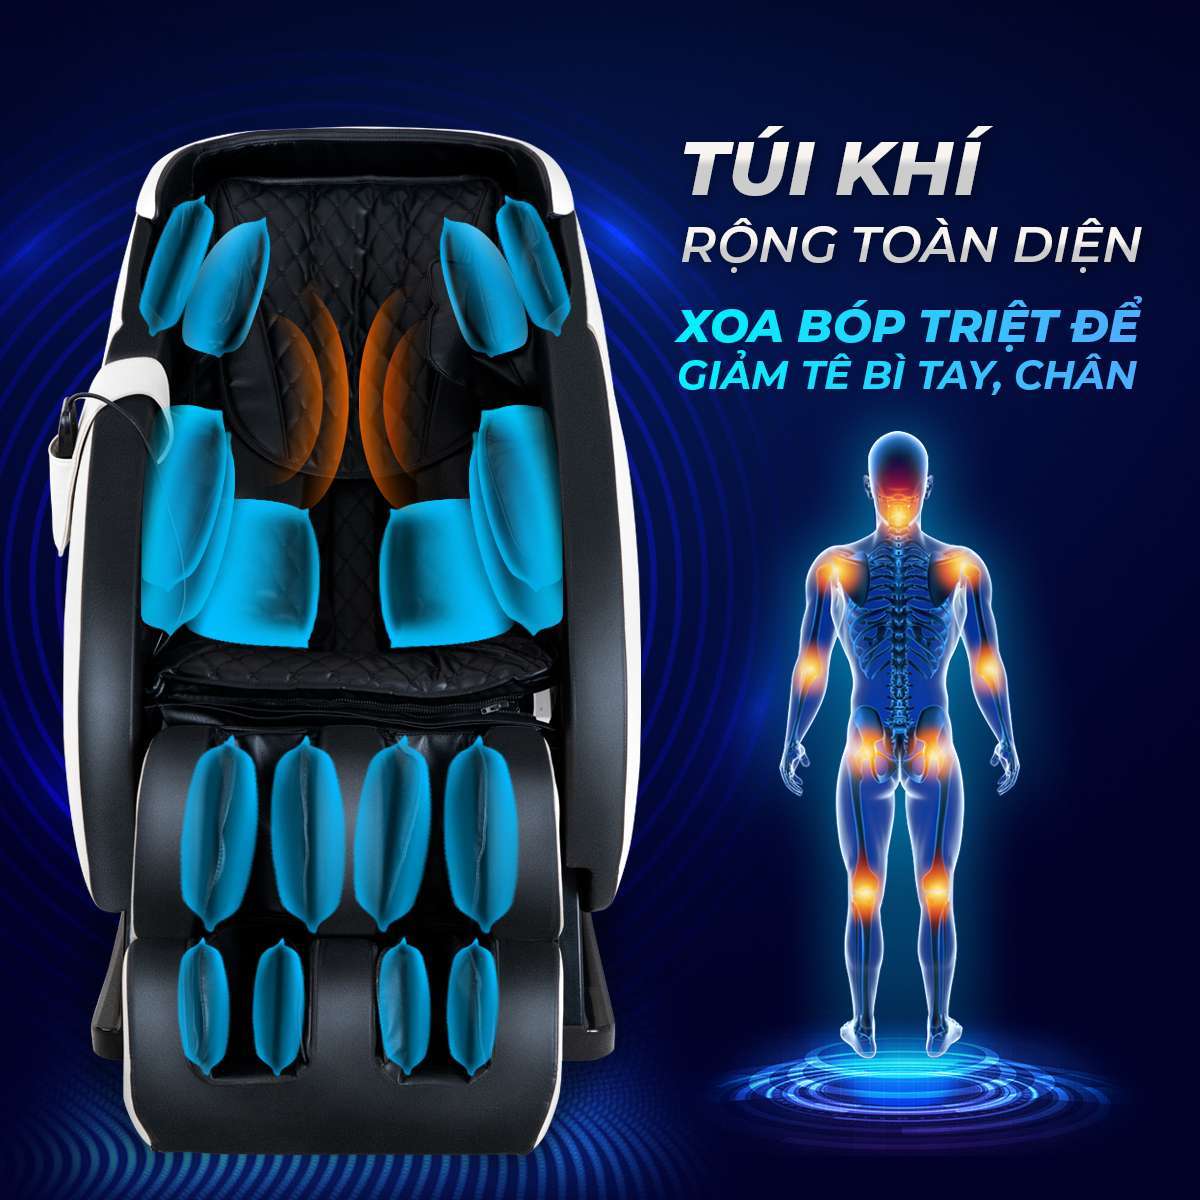 Gợi ý địa chỉ mua ghế massage ở Kiên Giang chính hãng